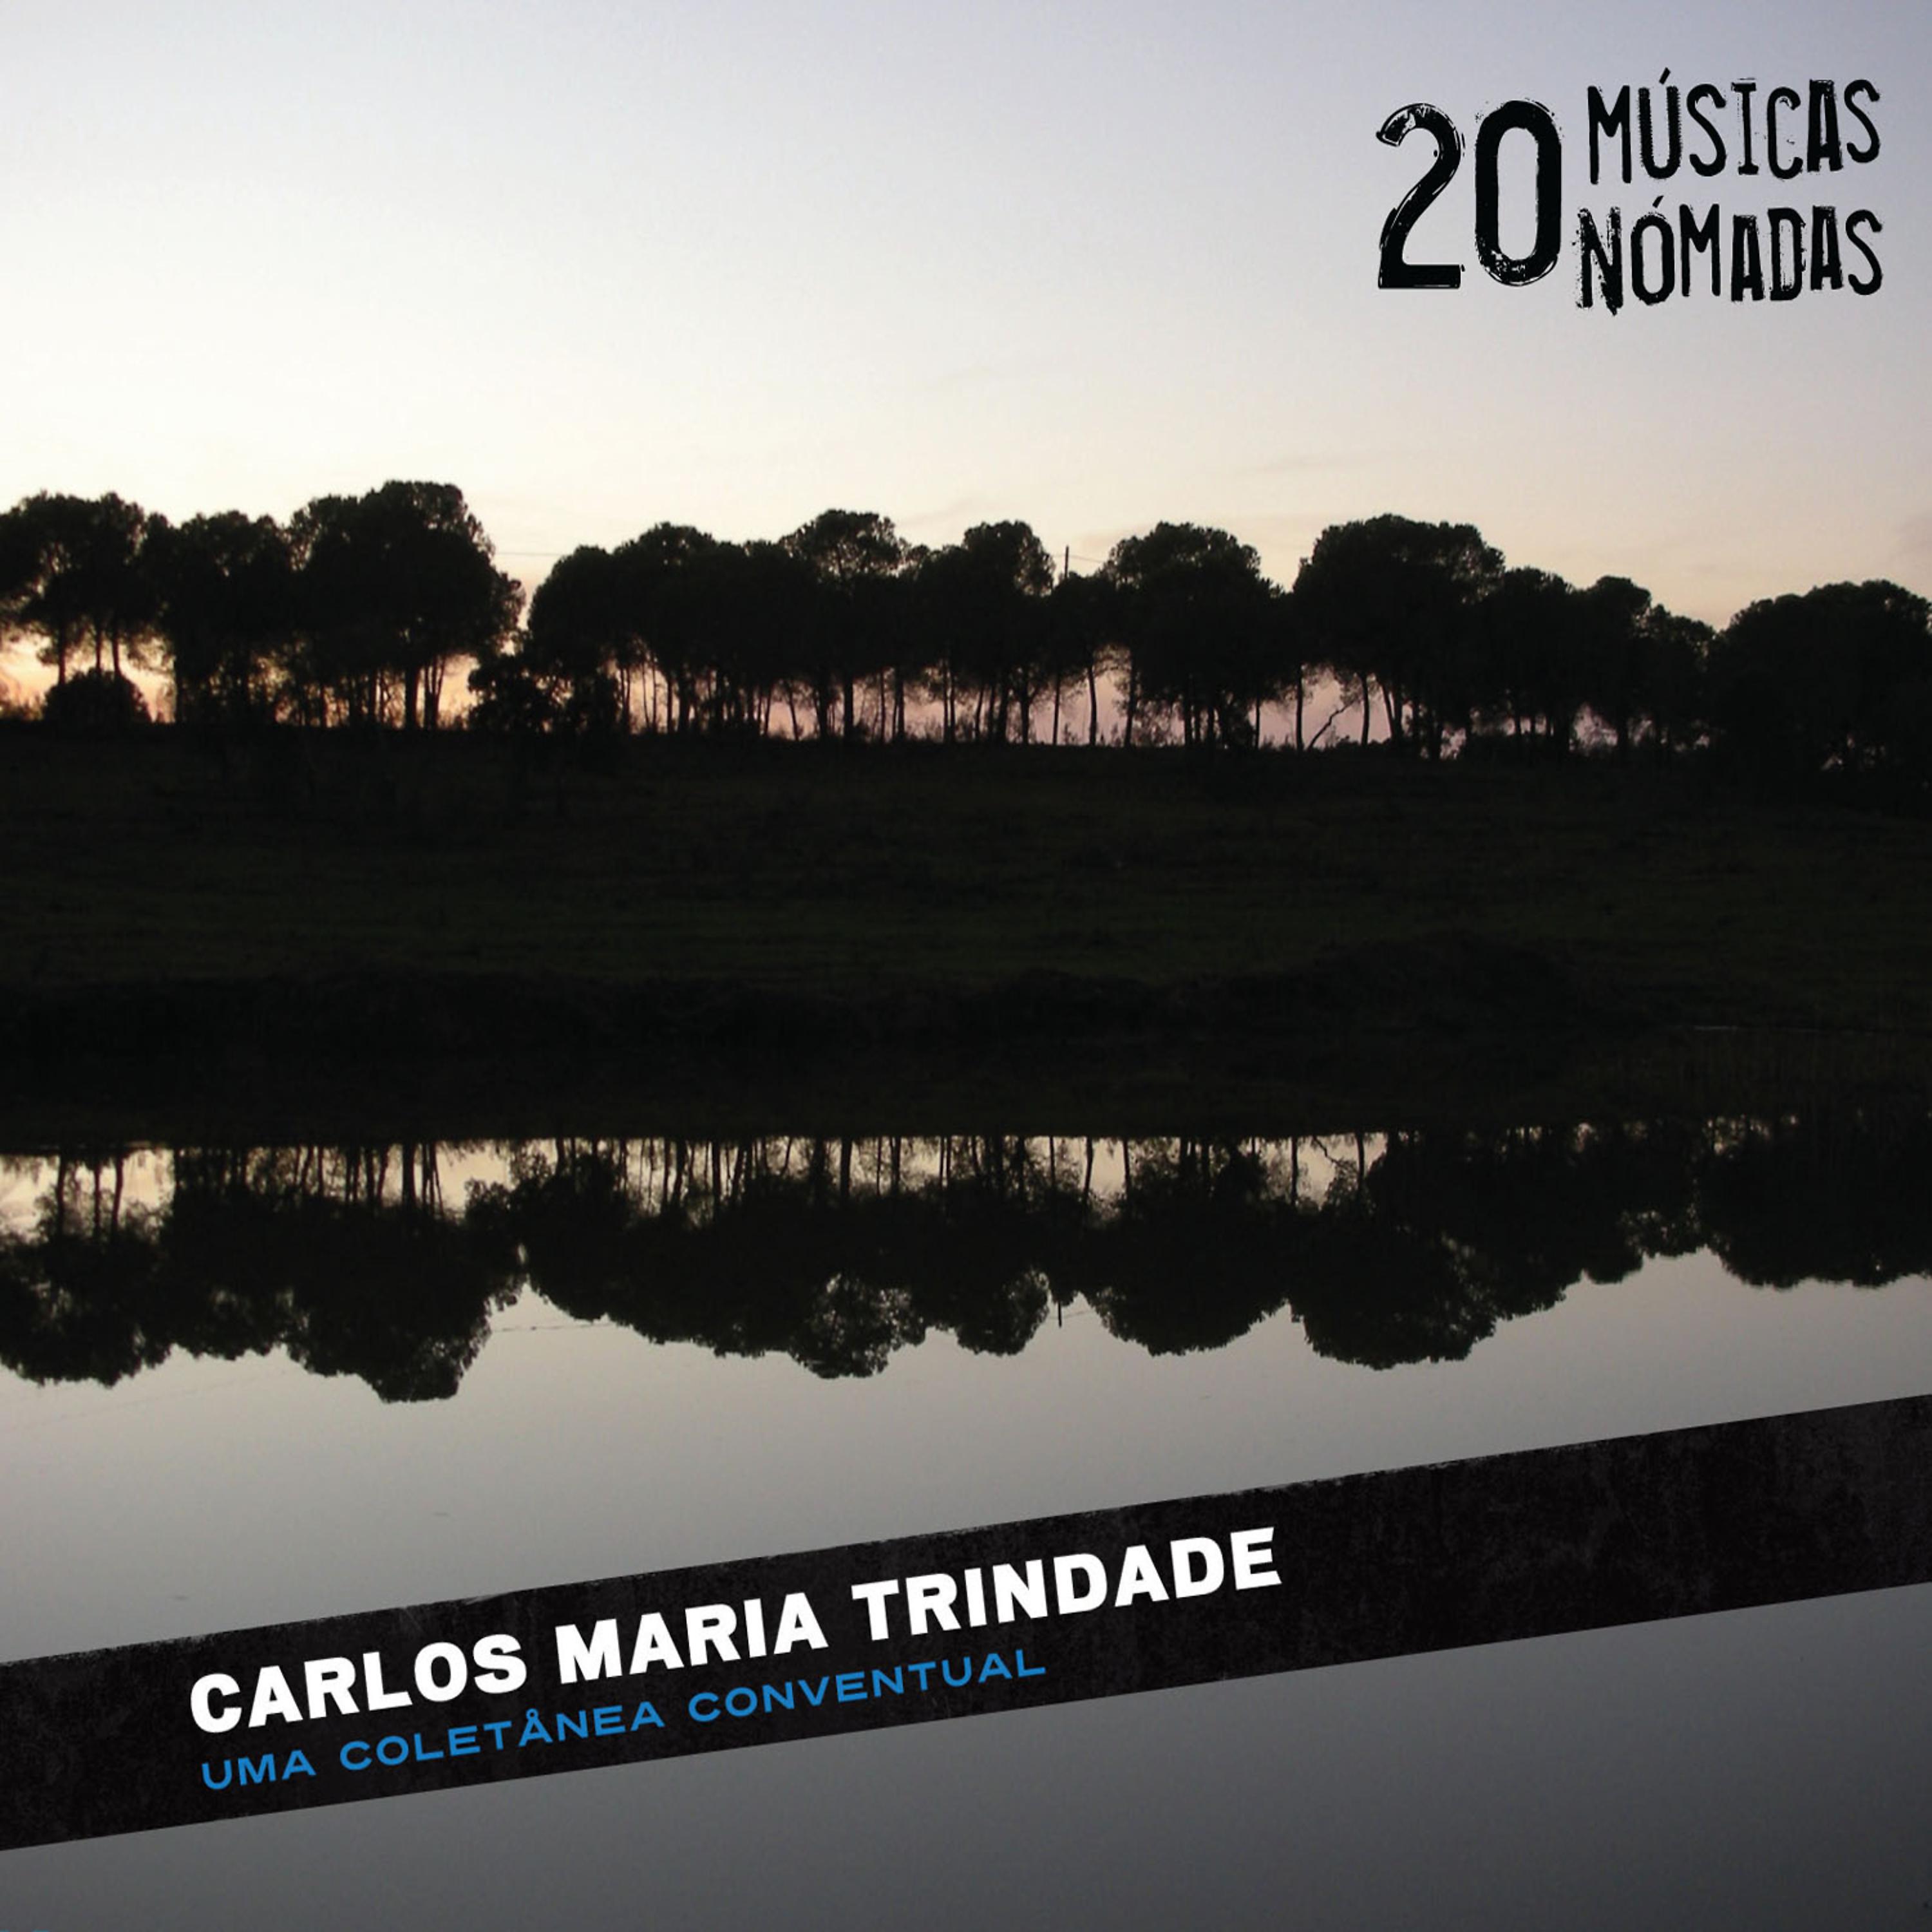 Постер альбома 20 Músicas Nómadas - Uma Colectânea Conventual